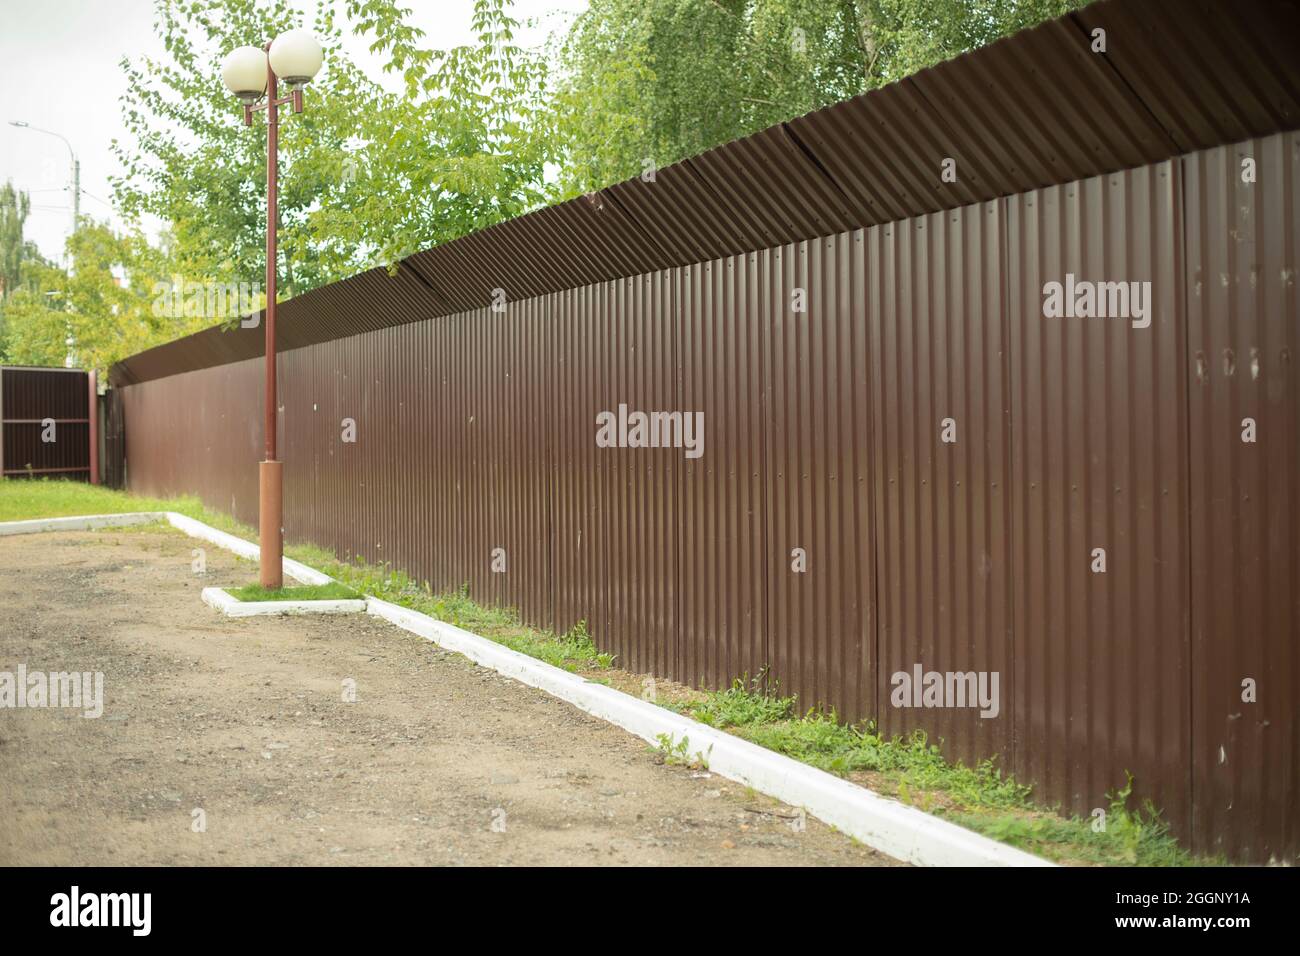 Una recinzione marrone racchiude l'area chiusa. Recinzione in metallo lungo il parcheggio. Protezione completa con recinzione solida. Foto Stock